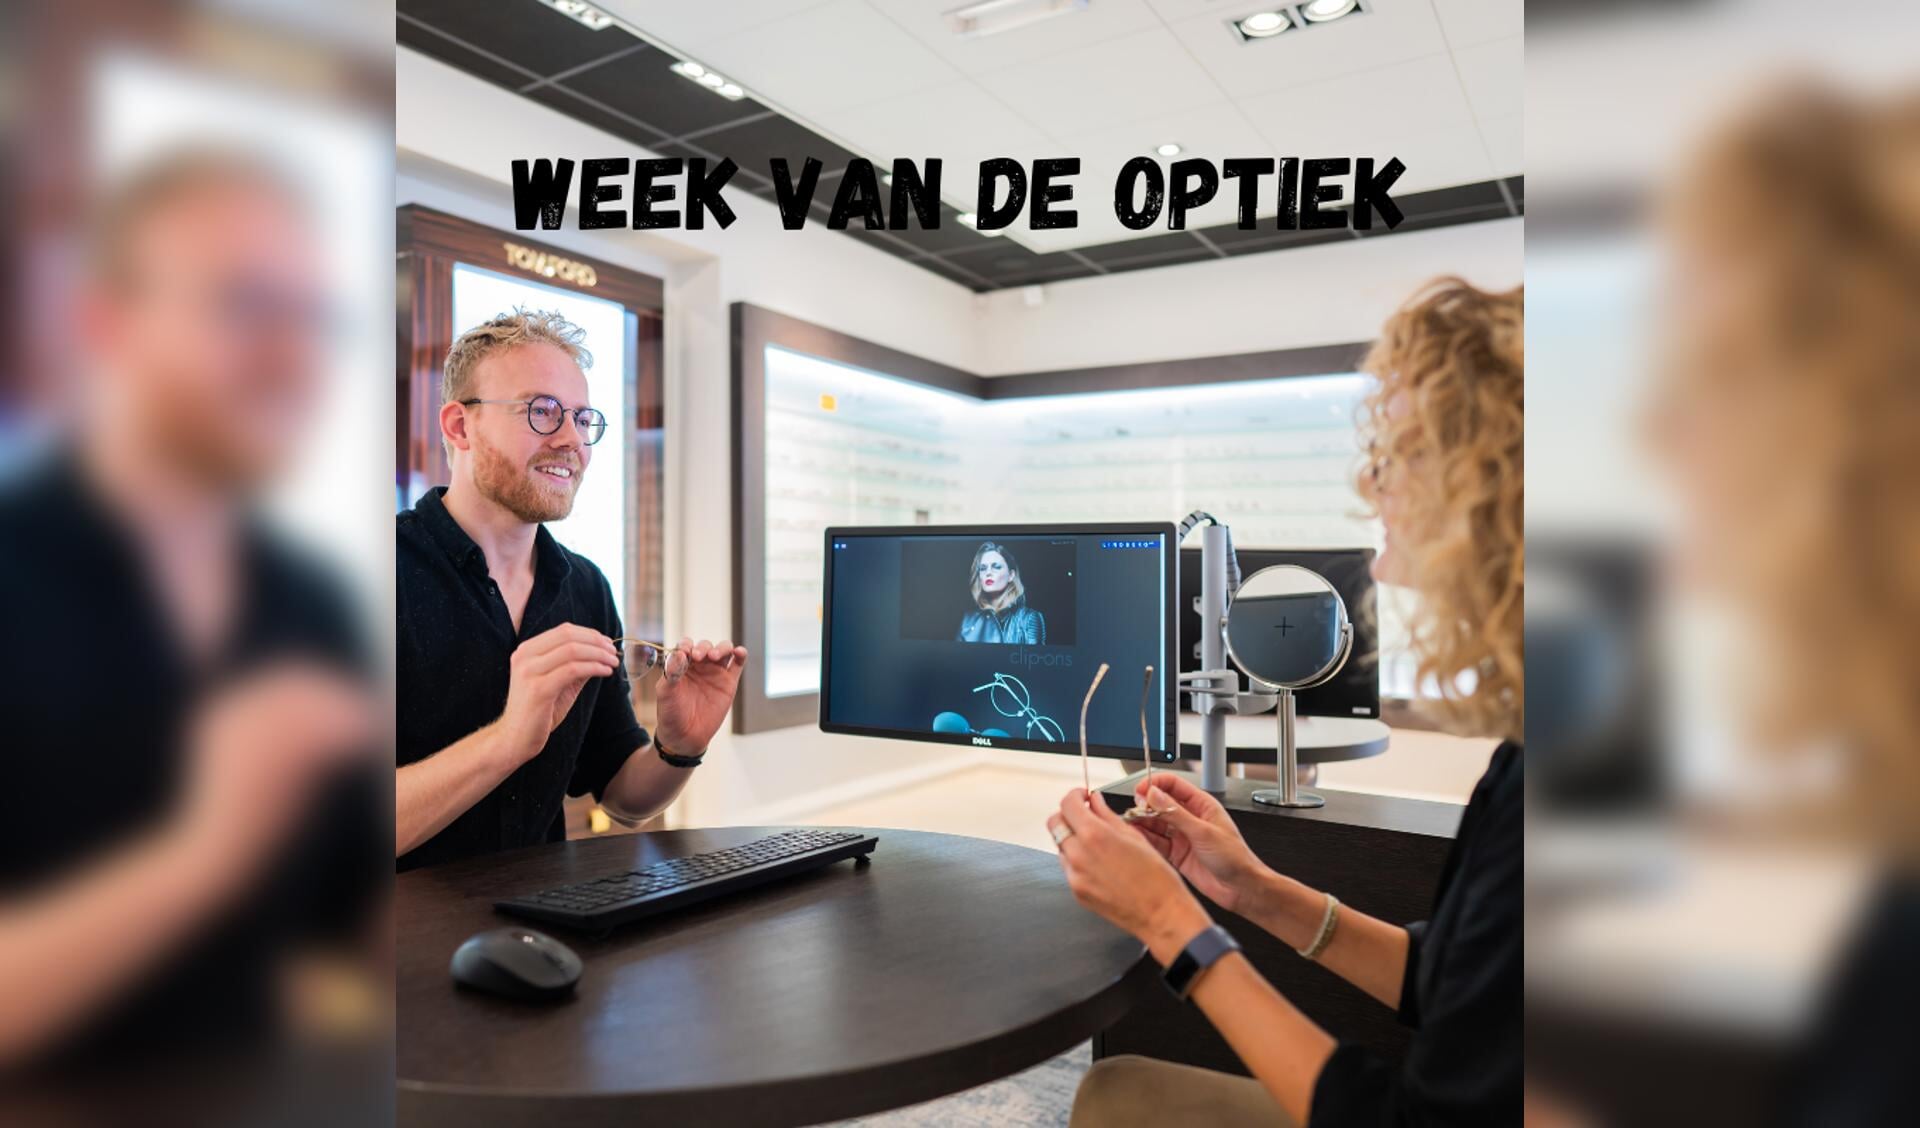 In de Week van de Optiek geeft Te Kiefte graag informatie over werken in de optiek. Foto: PR